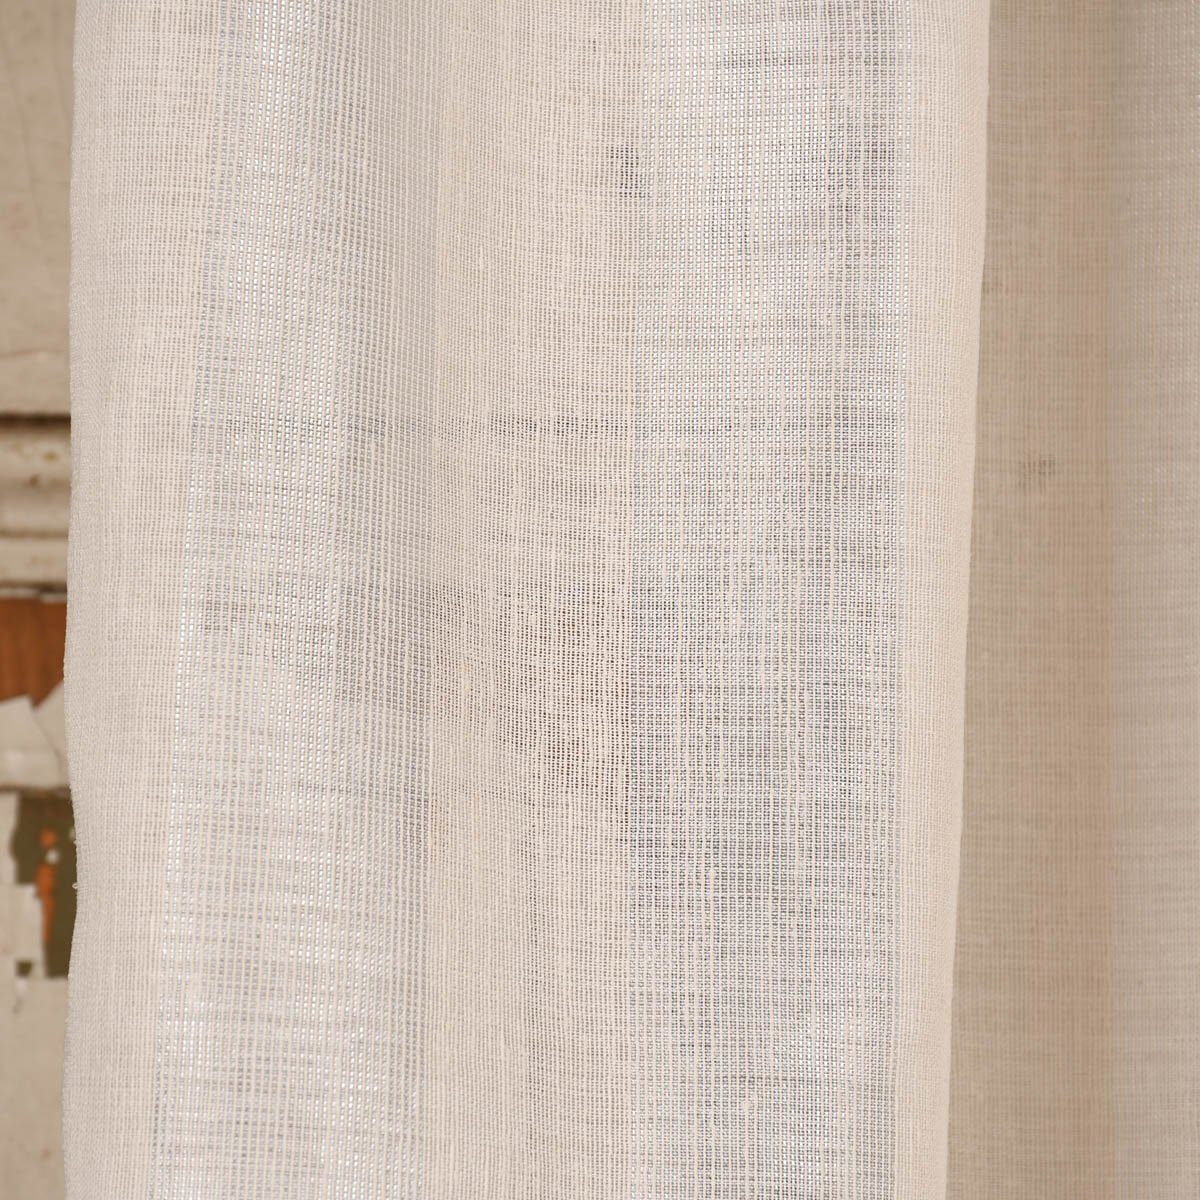 300cm, creme Kunstfaser, Rasch überbreit Leinenstruktur halbtransparent, Textil Längsstreifen Stores Meterware Shine